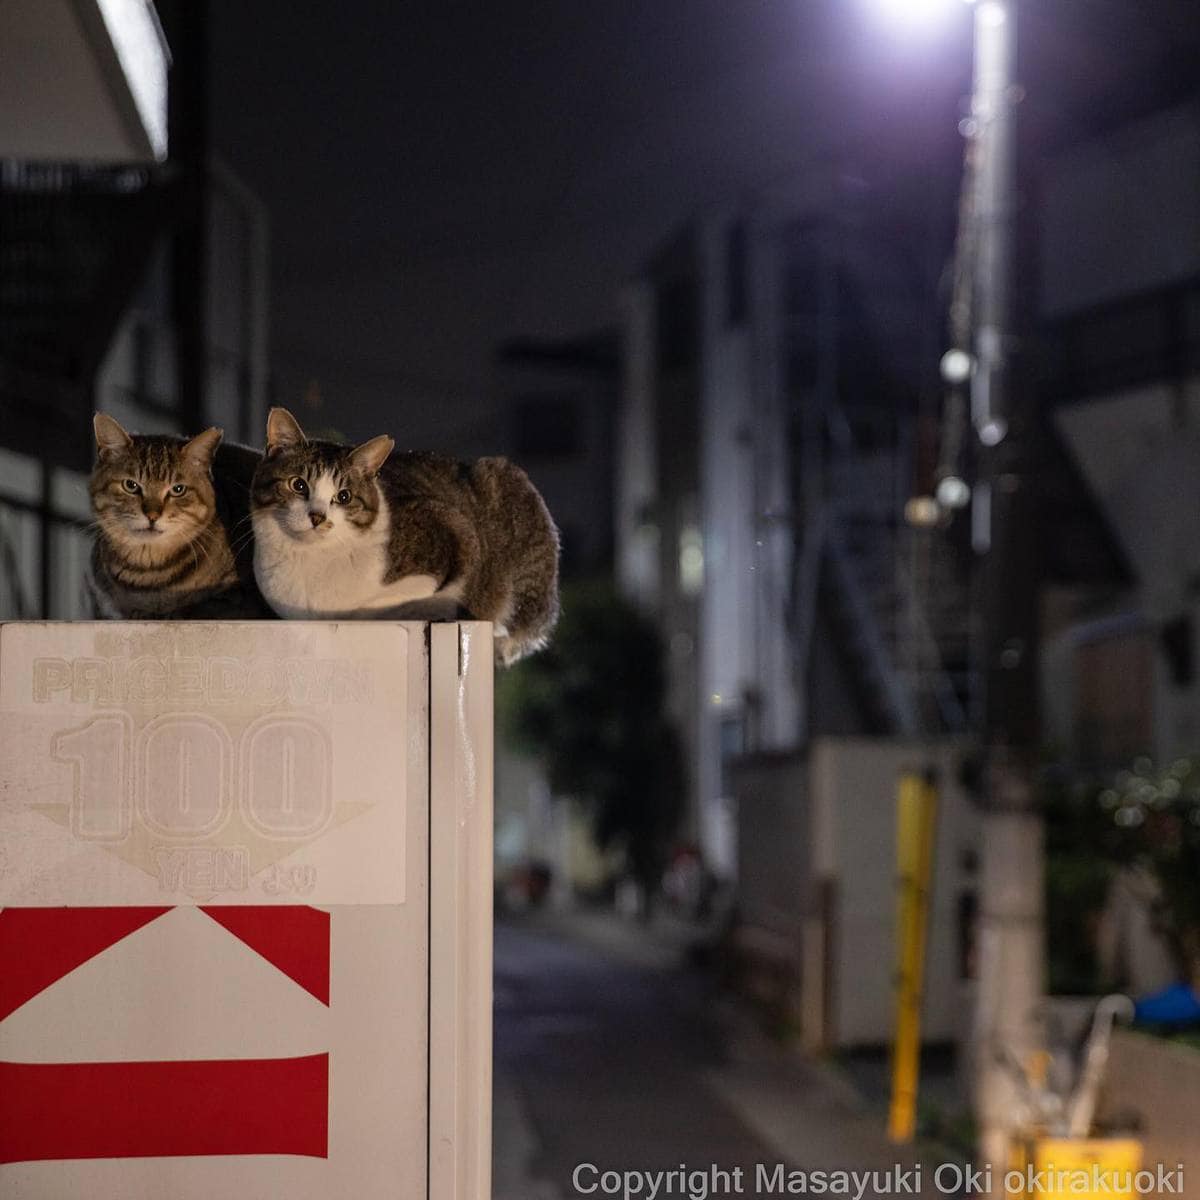 20 снимков уличных котов от японского фотографа, который как никто умеет запечатлевать харизму этих бродяг 77